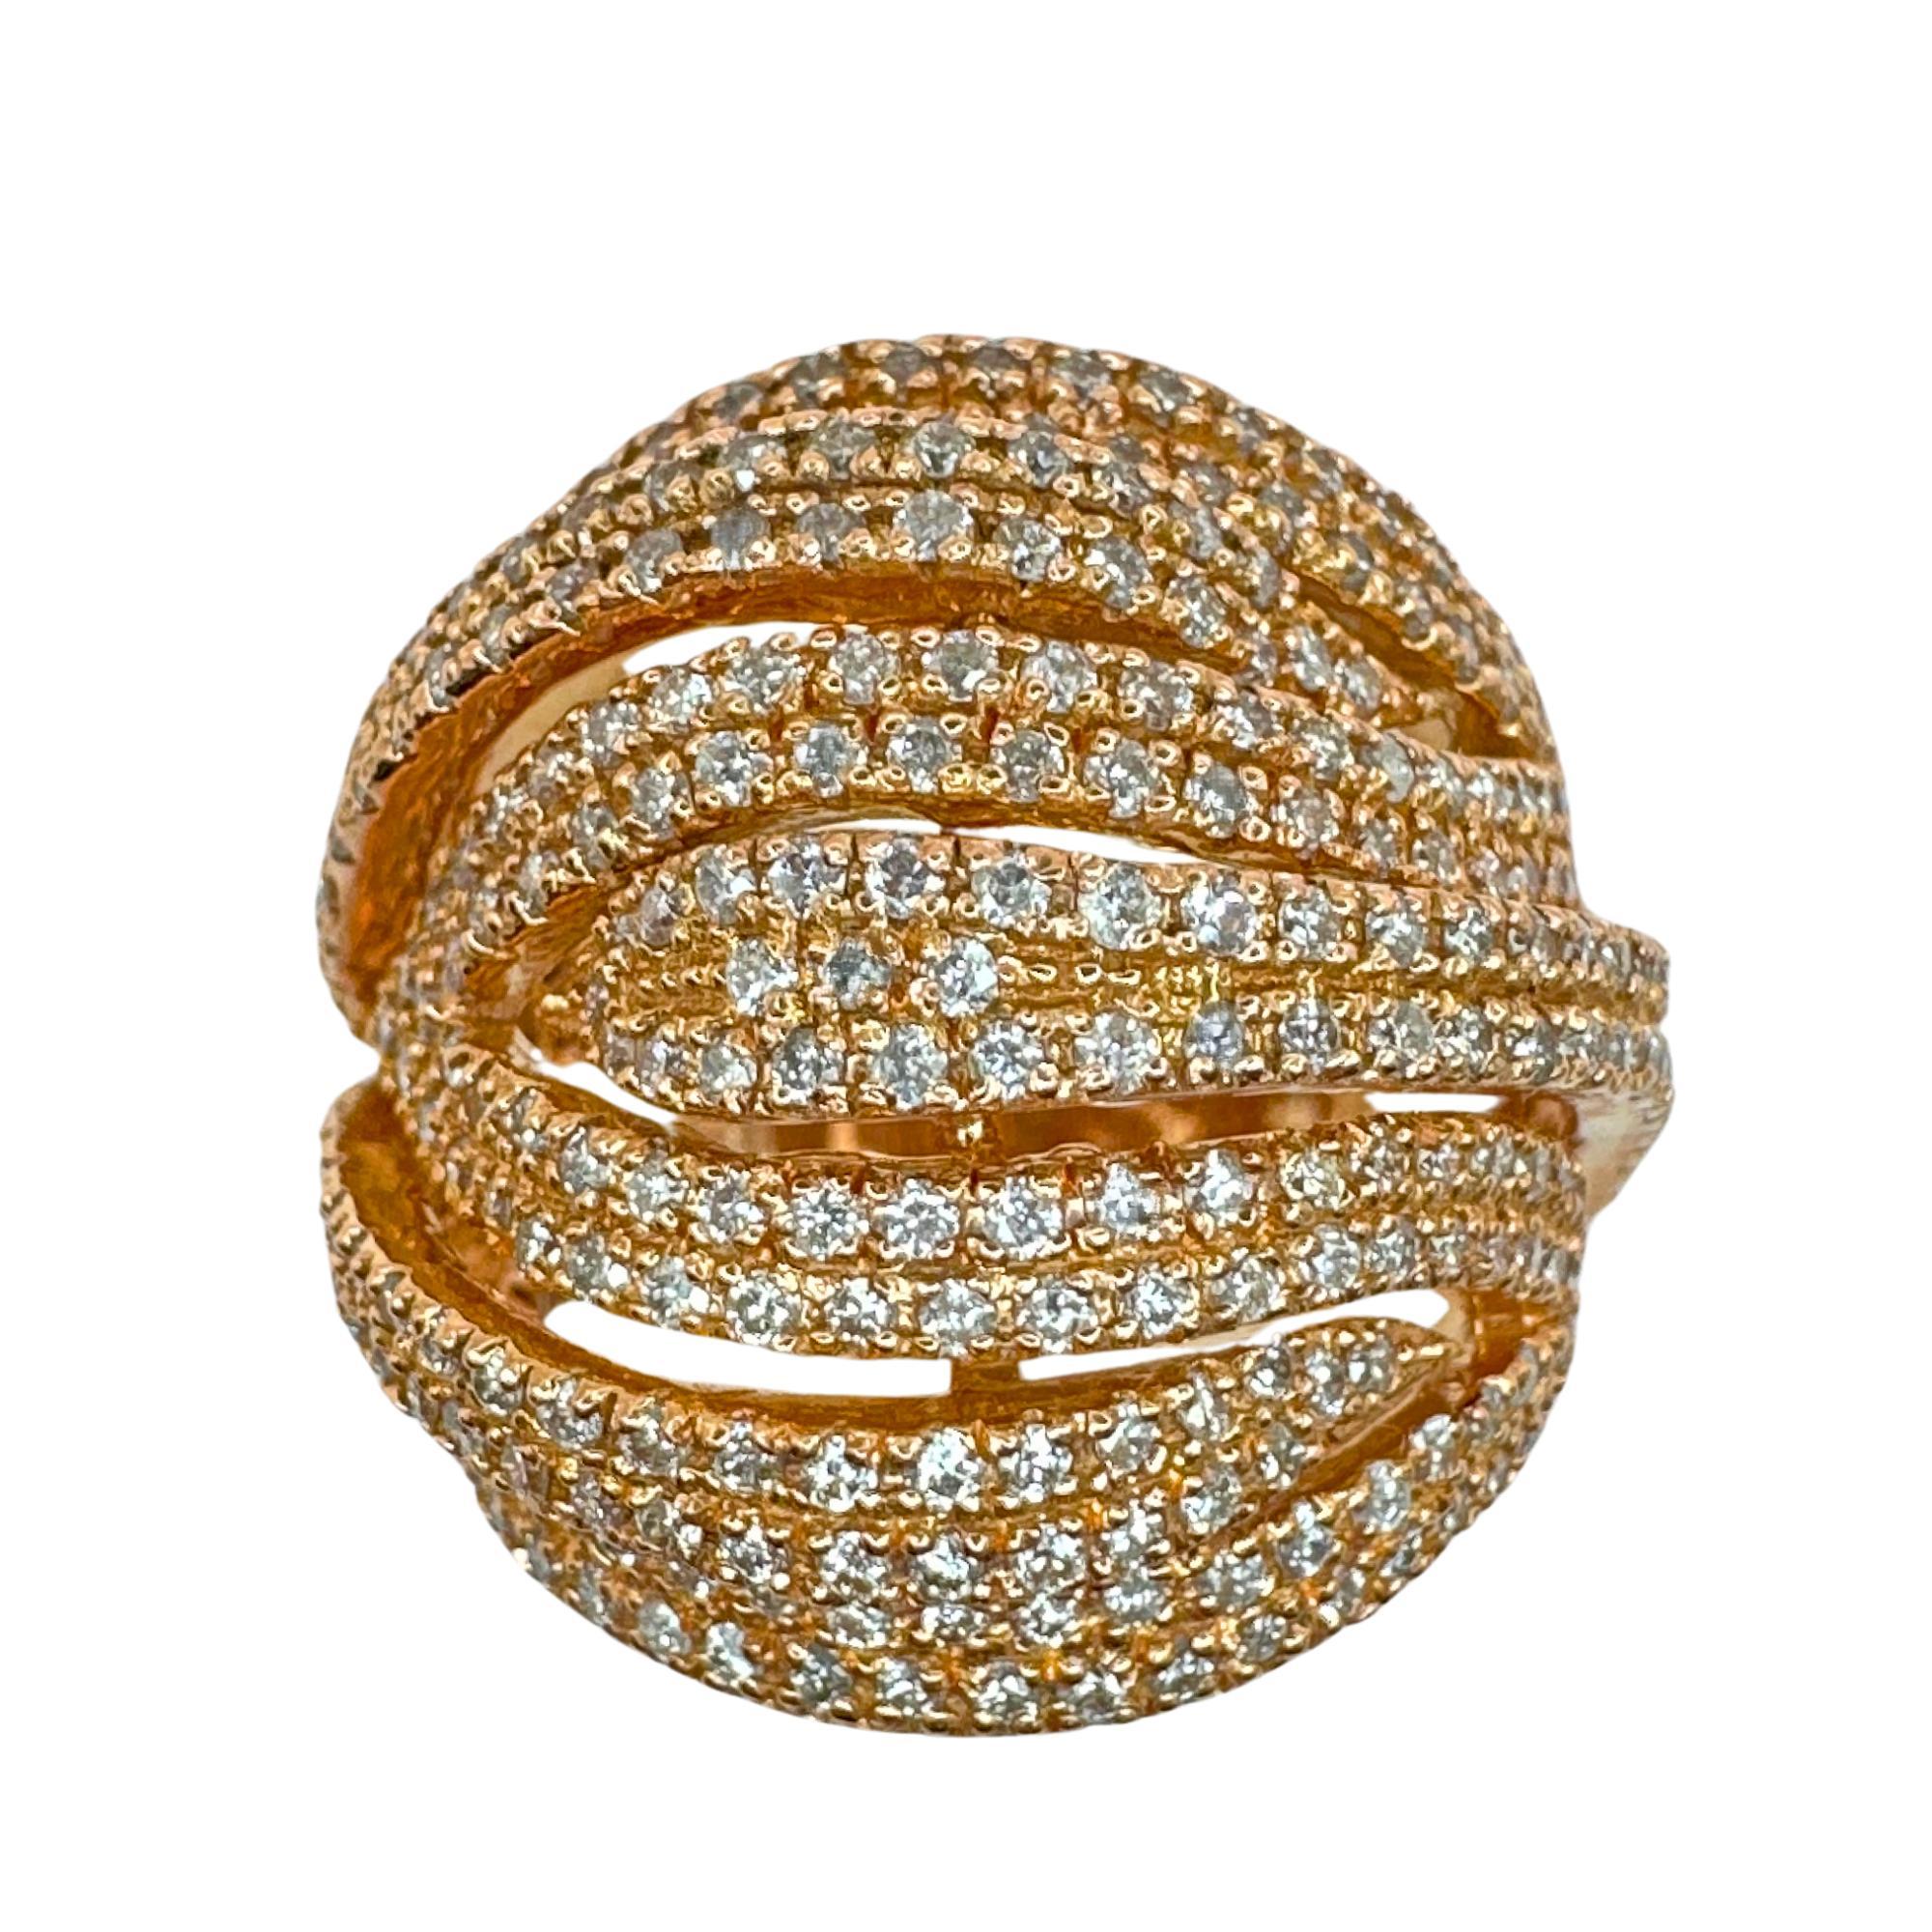 Verkörpern Sie Eleganz und Raffinesse mit unserem 14k Rose Gold Diamond Wide Band Ring. Dieses atemberaubende Stück hat ein 13,18 mm breites Band aus 14-karätigem Roségold, das mit 